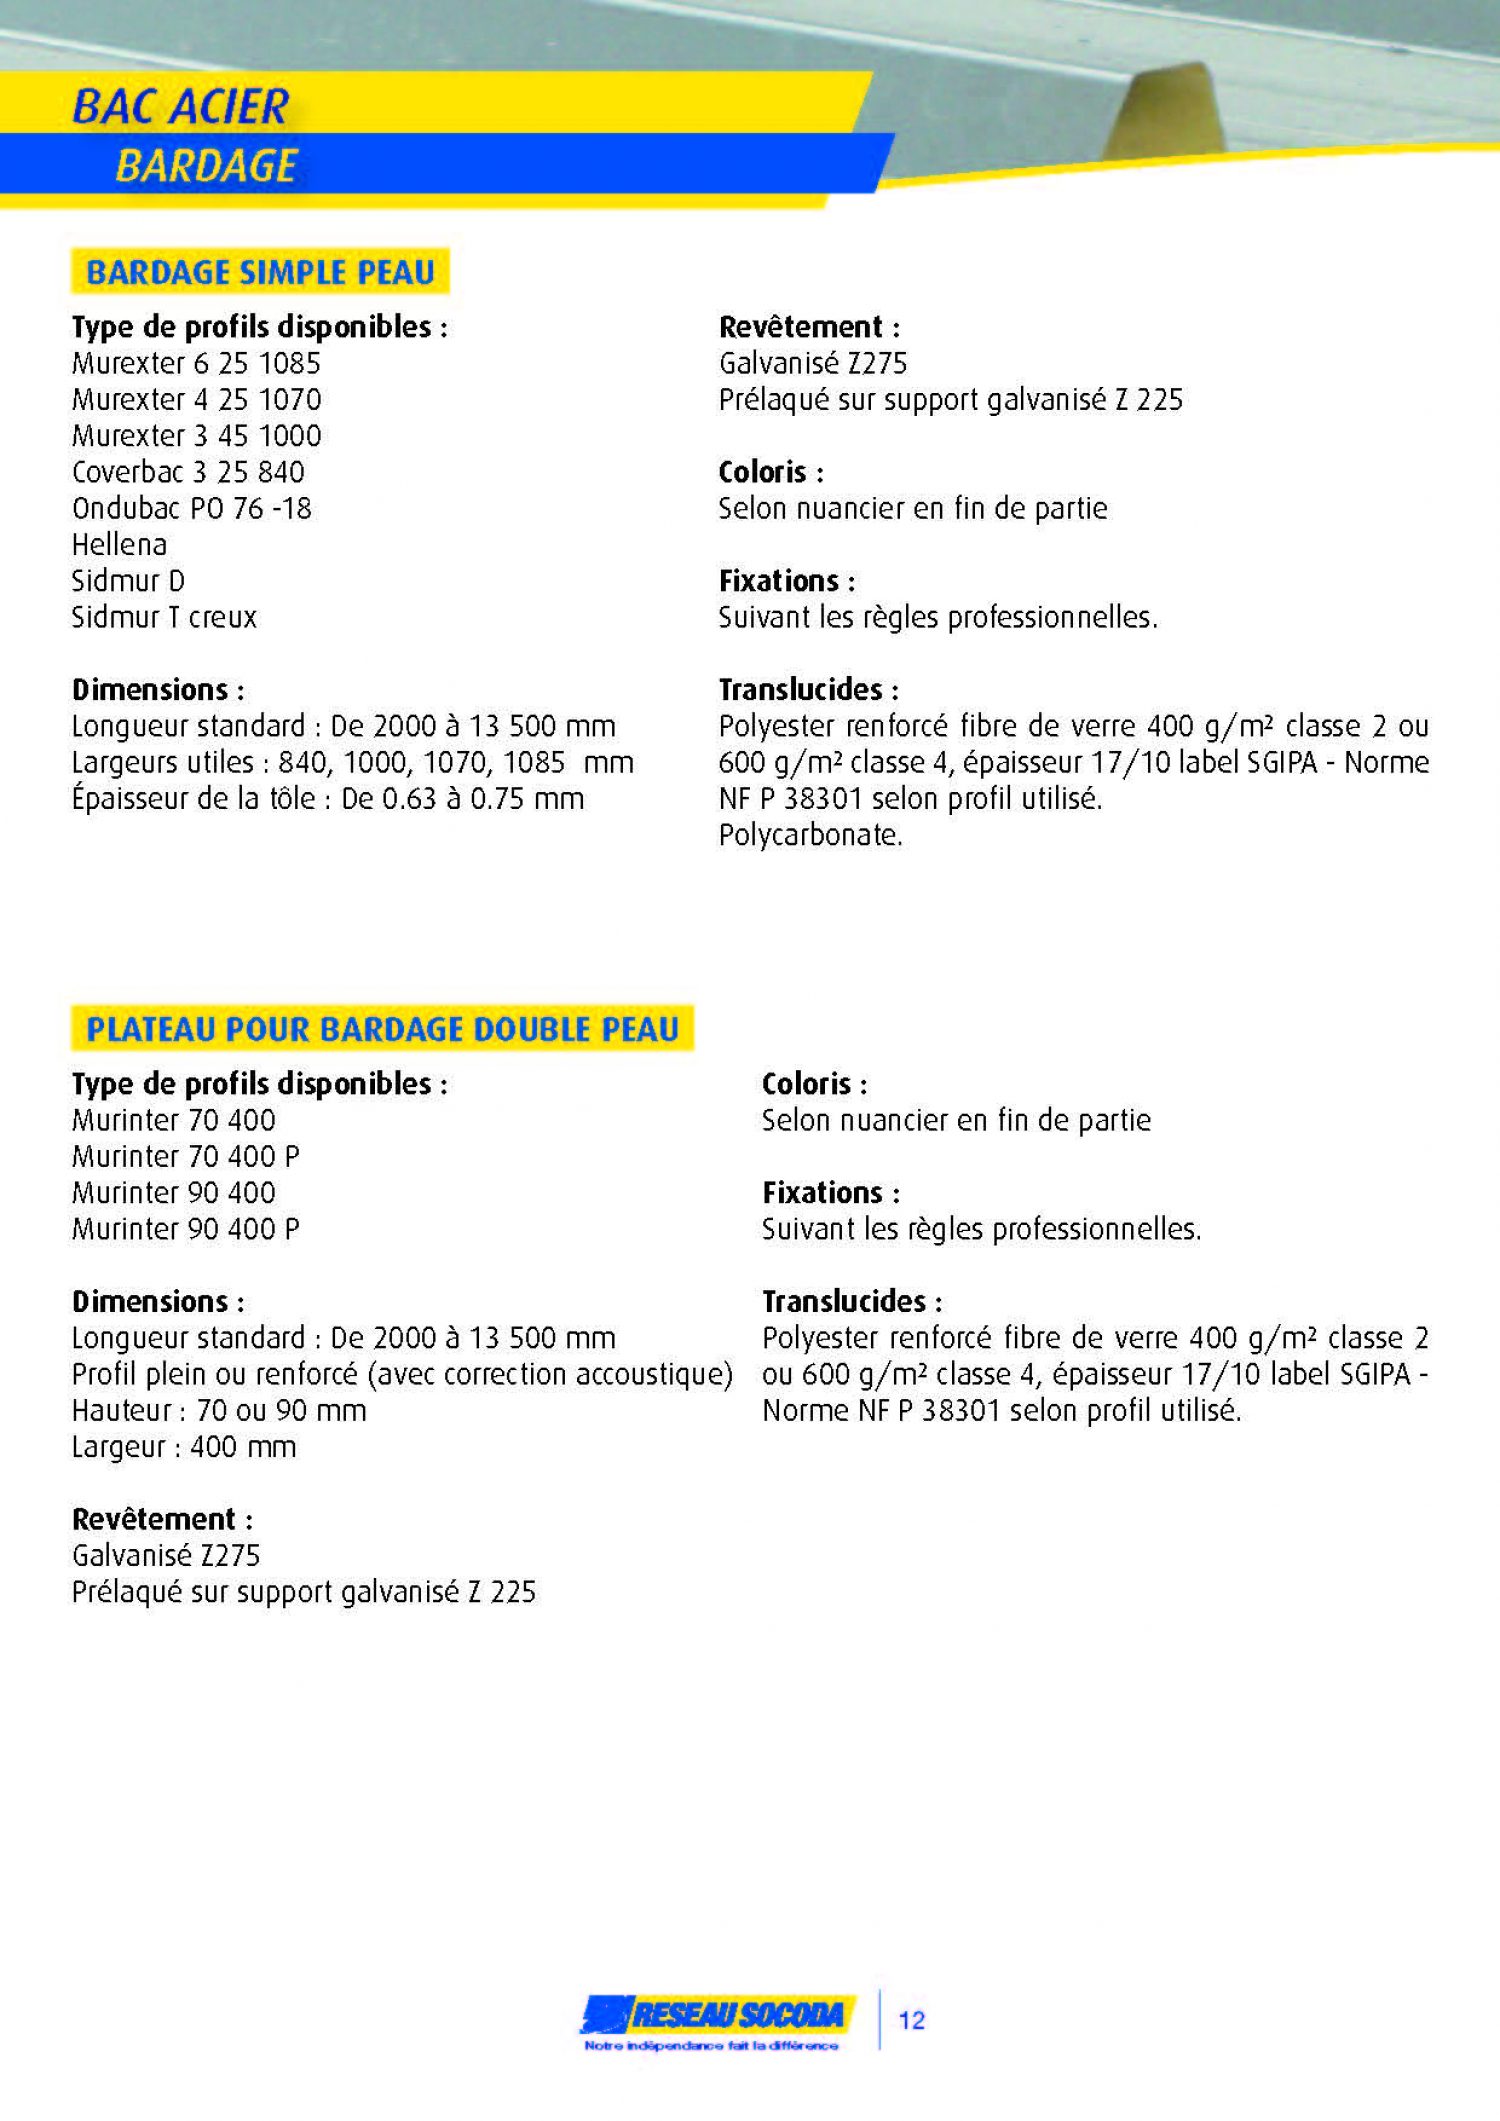 GERMOND_2014 PROFIL BATIMENT_20140324-184231_Page_12